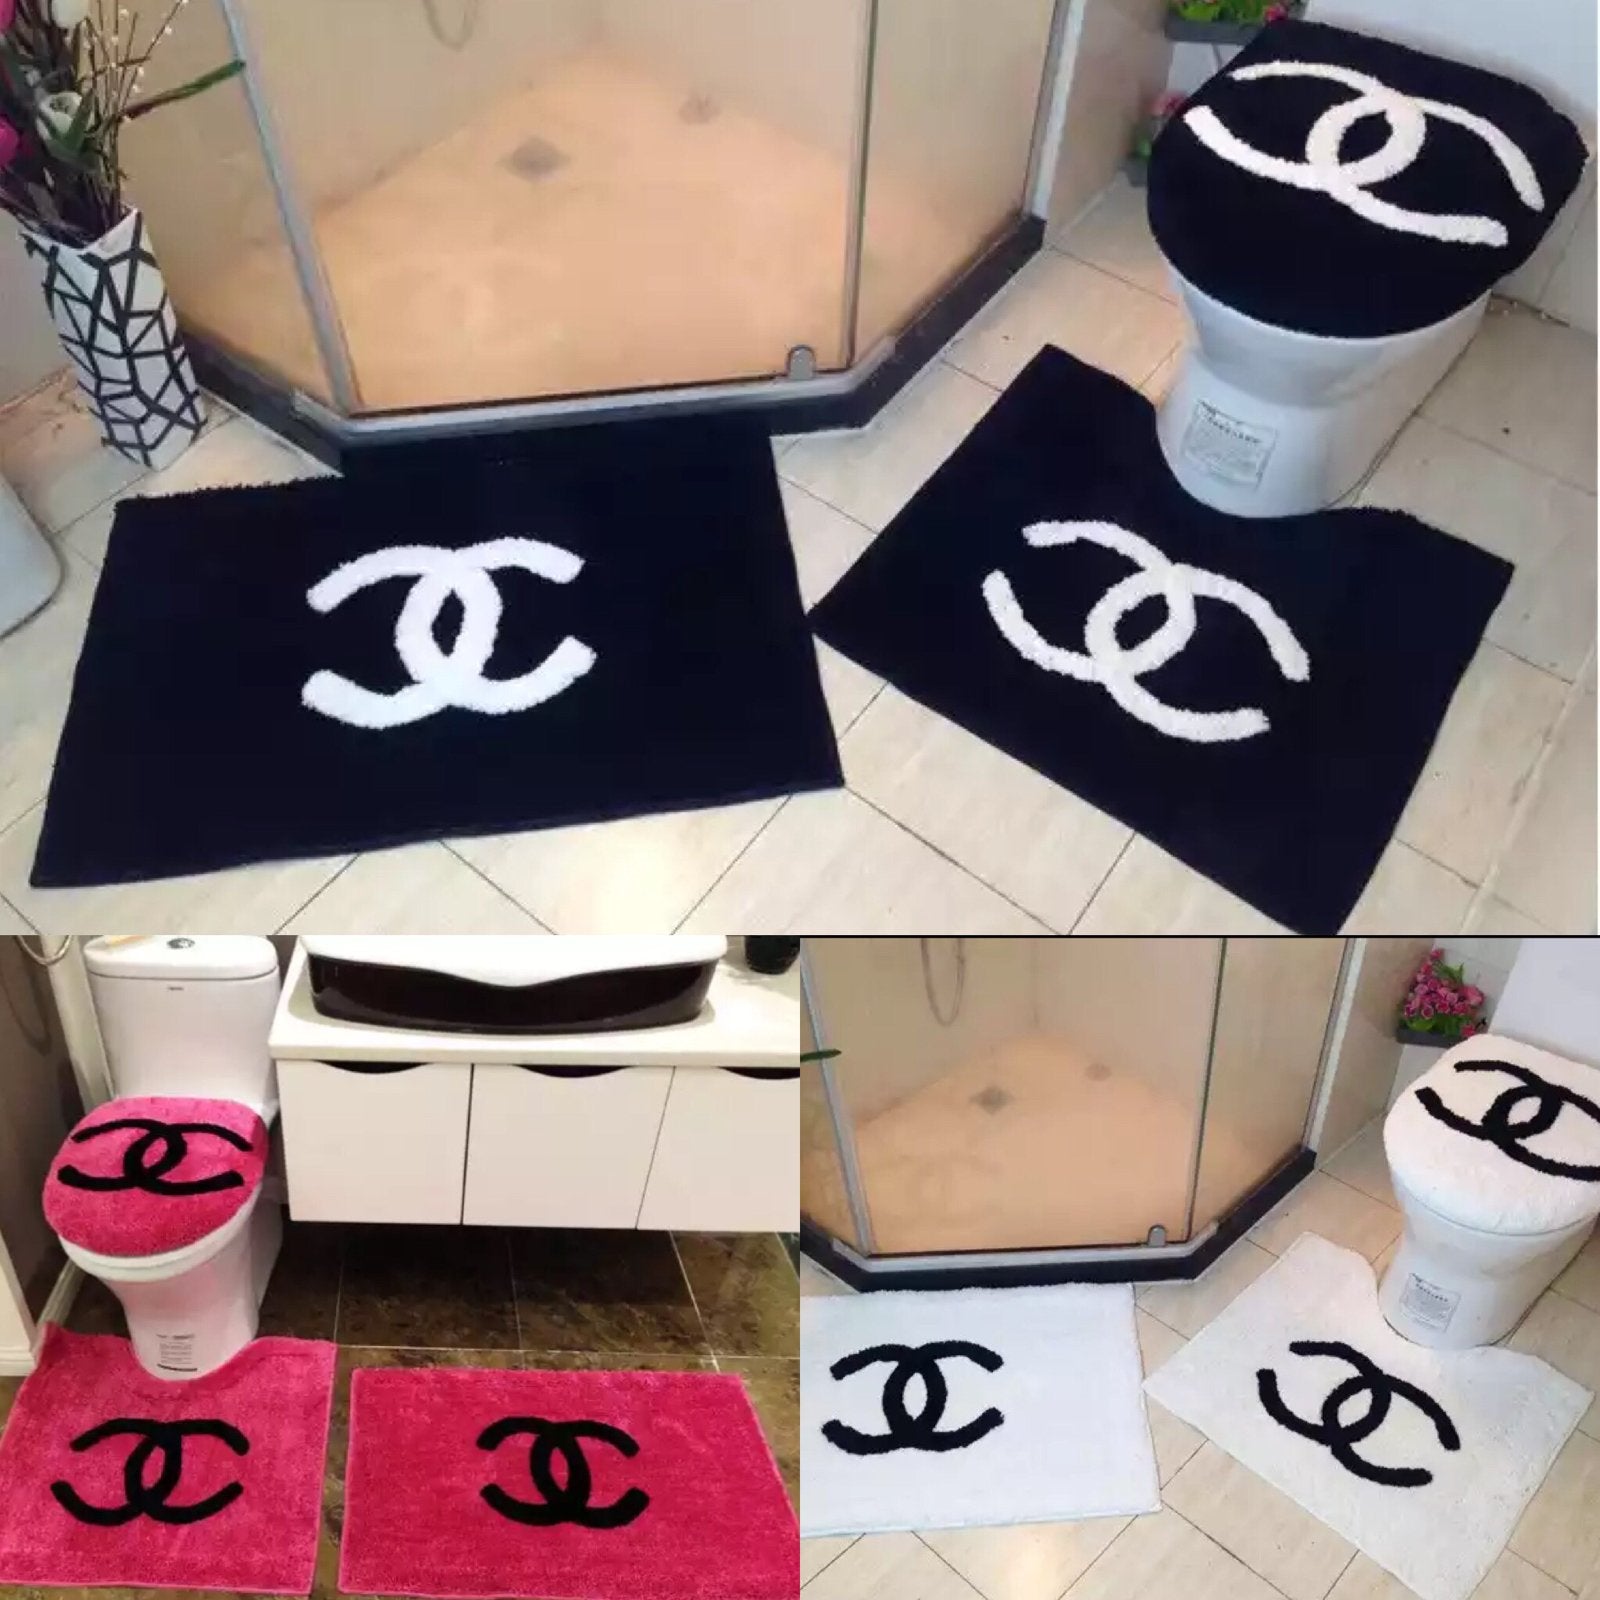 Chanel Bath Items